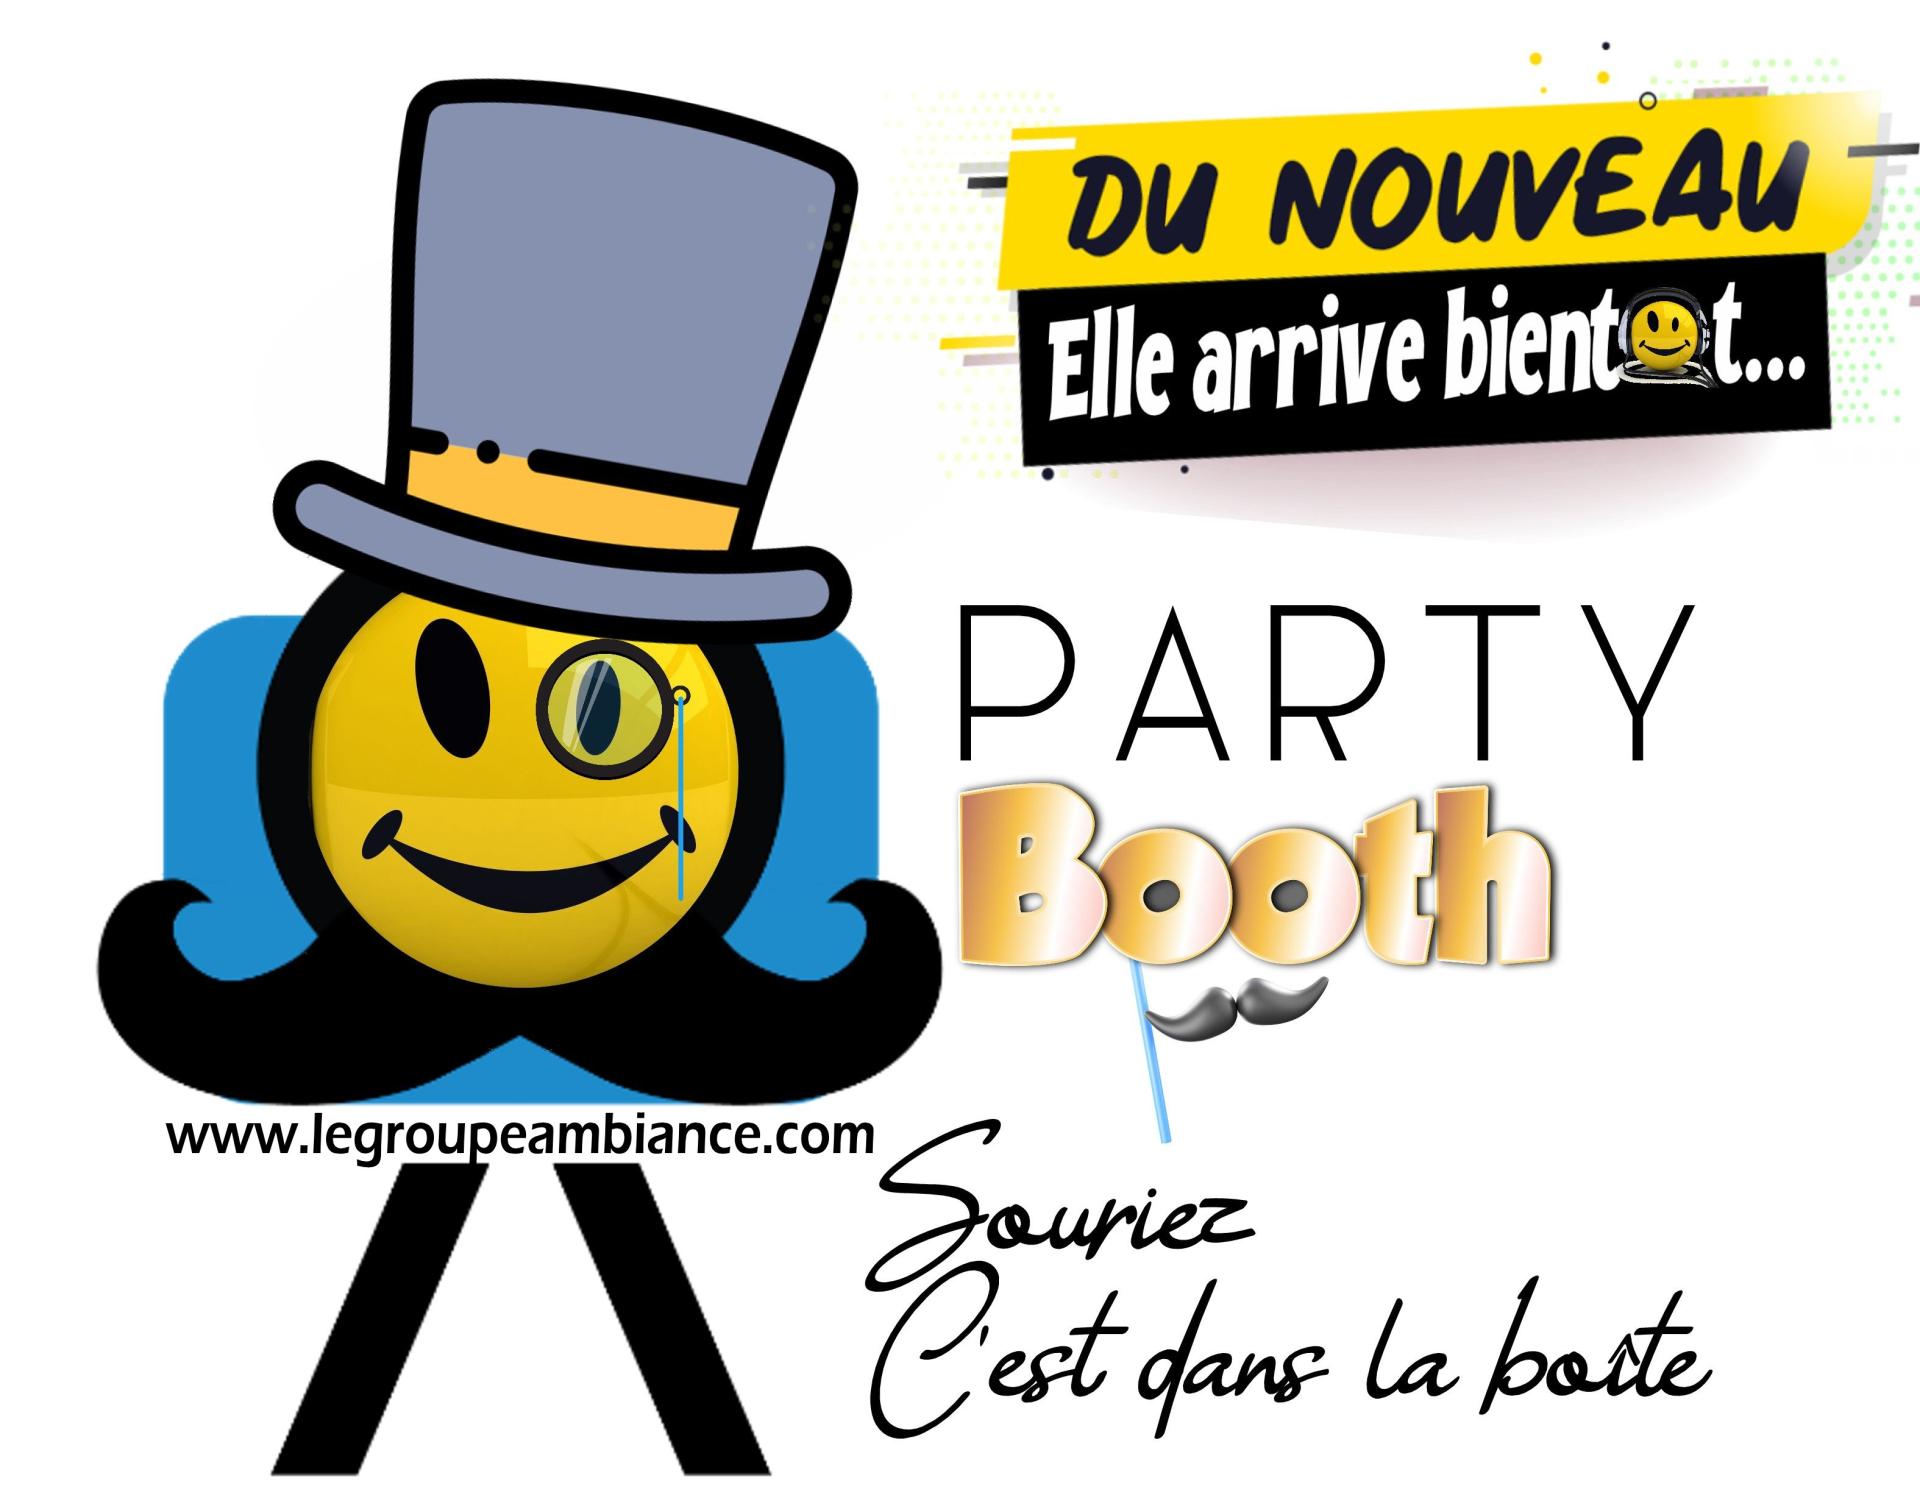 Copie de logo partybooth